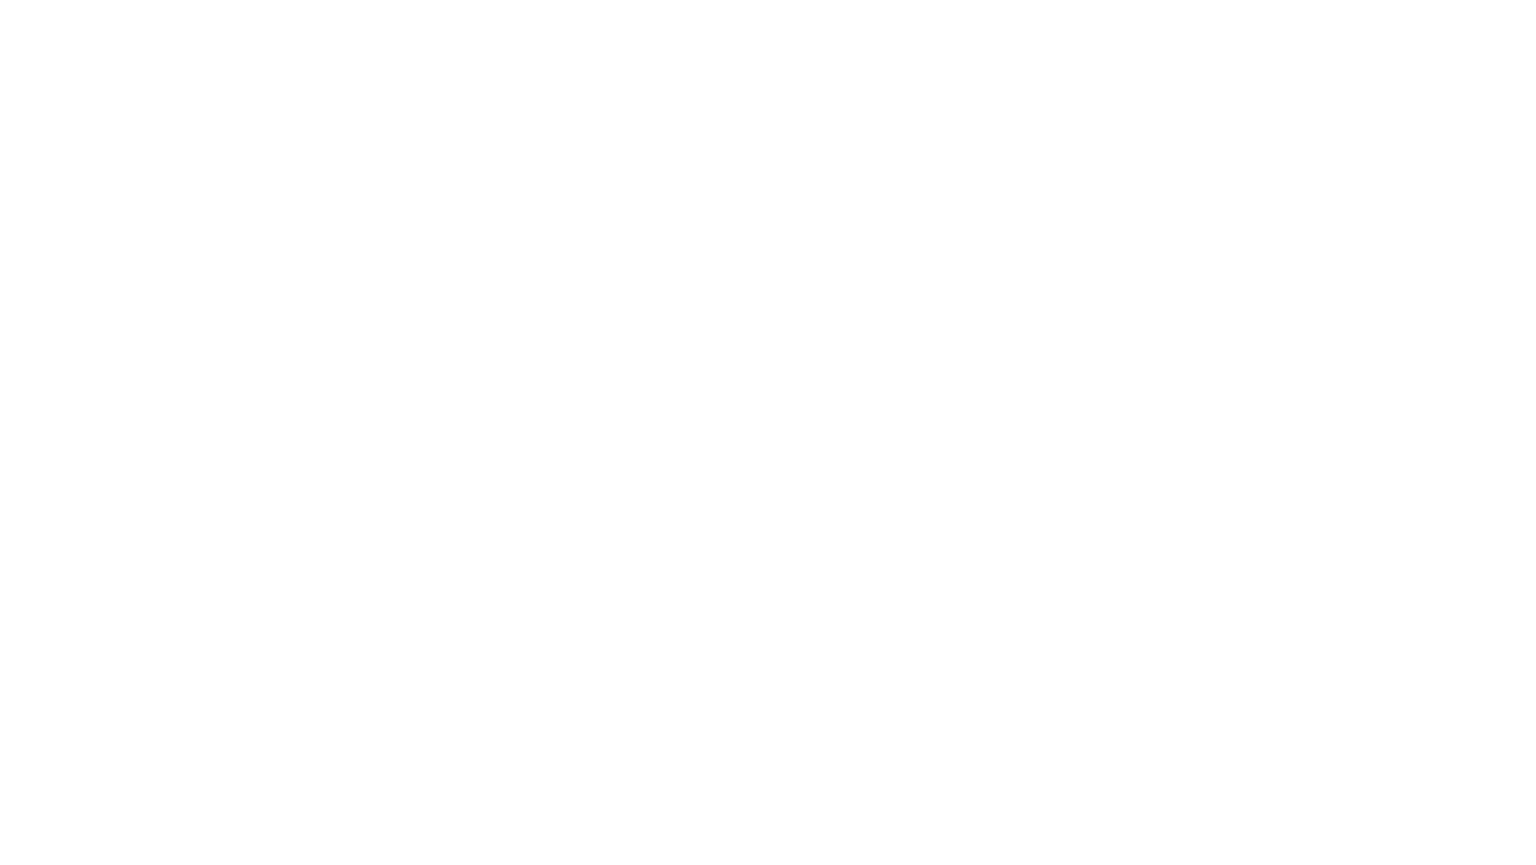 British Data Award: Start-Up of the Year 2024